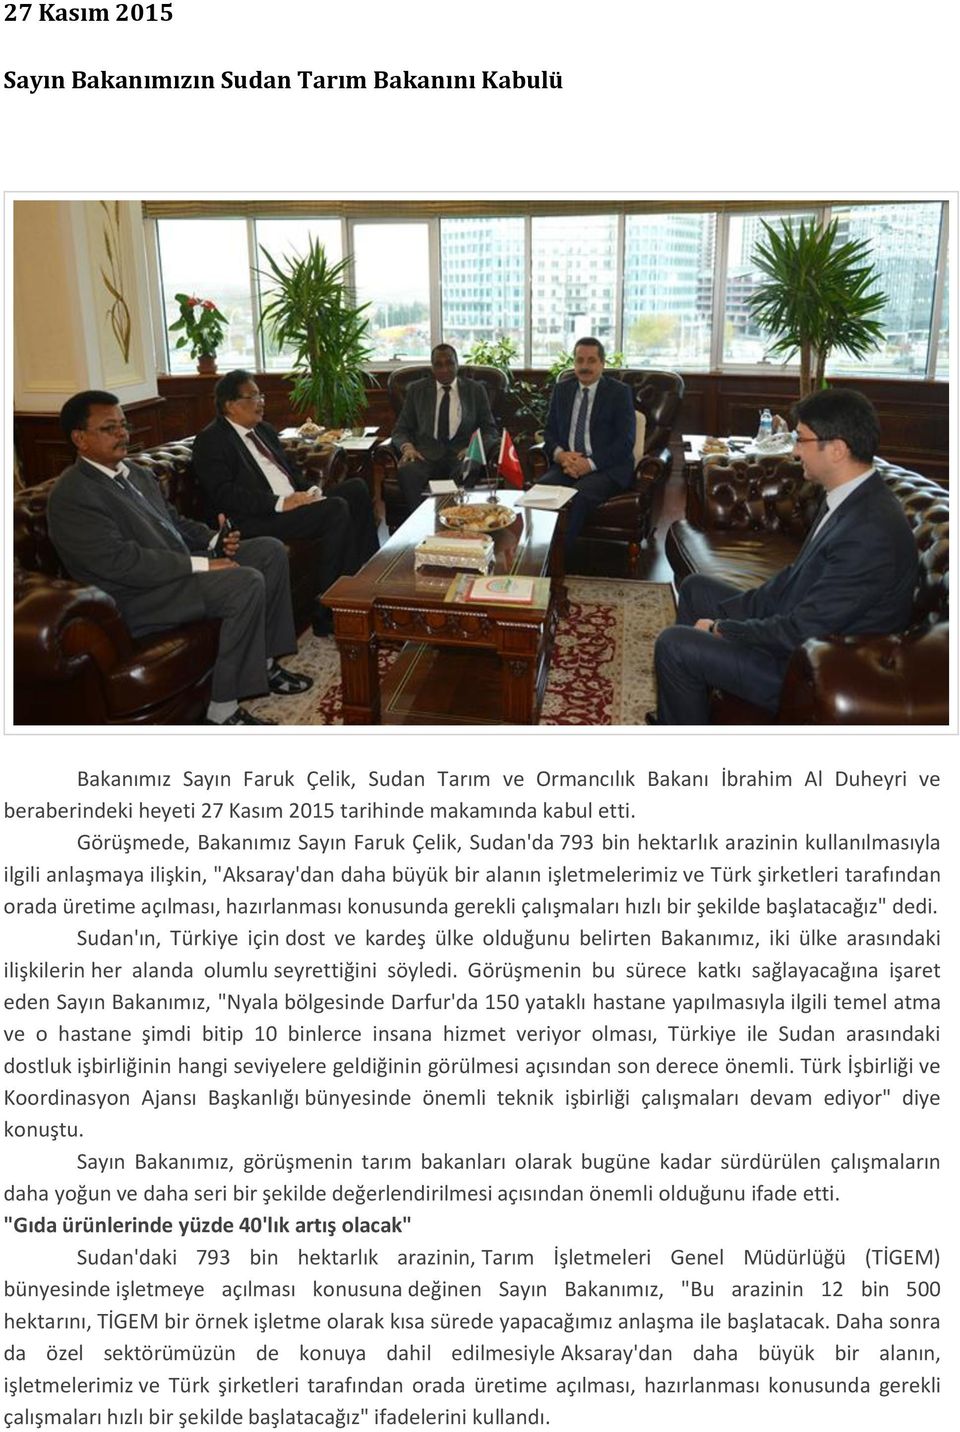 Görüşmede, Bakanımız Sayın Faruk Çelik, Sudan'da 793 bin hektarlık arazinin kullanılmasıyla ilgili anlaşmaya ilişkin, "Aksaray'dan daha büyük bir alanın işletmelerimiz ve Türk şirketleri tarafından